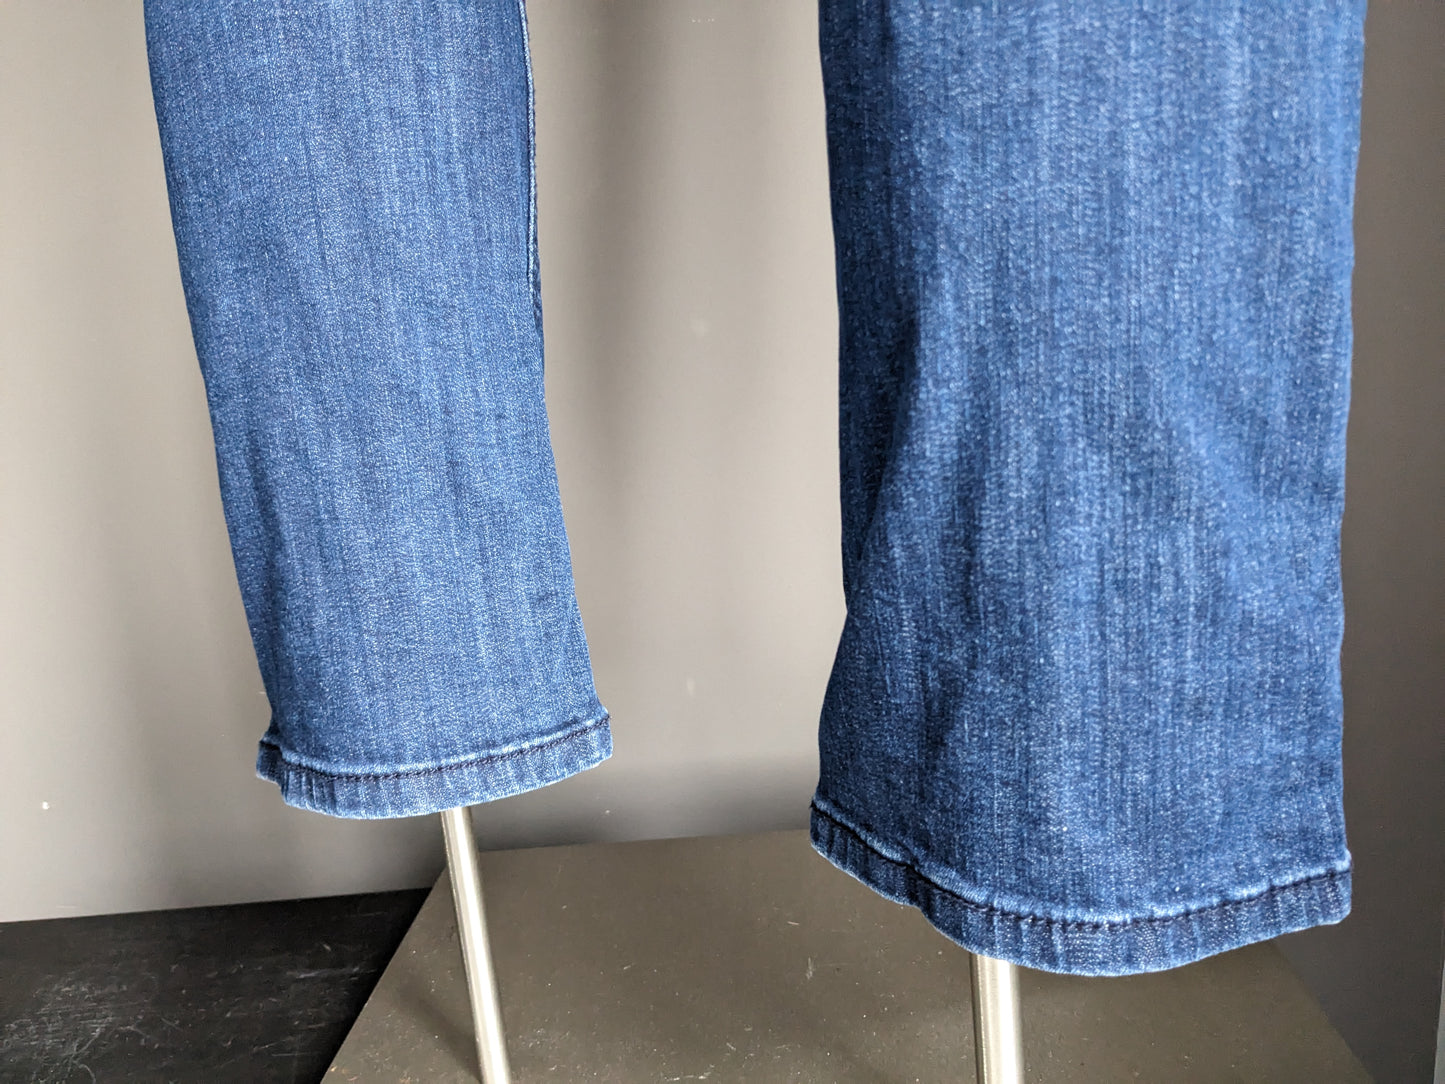 C & A Jeans. Dunkelblau. W29 - L32. Gerade Passform.